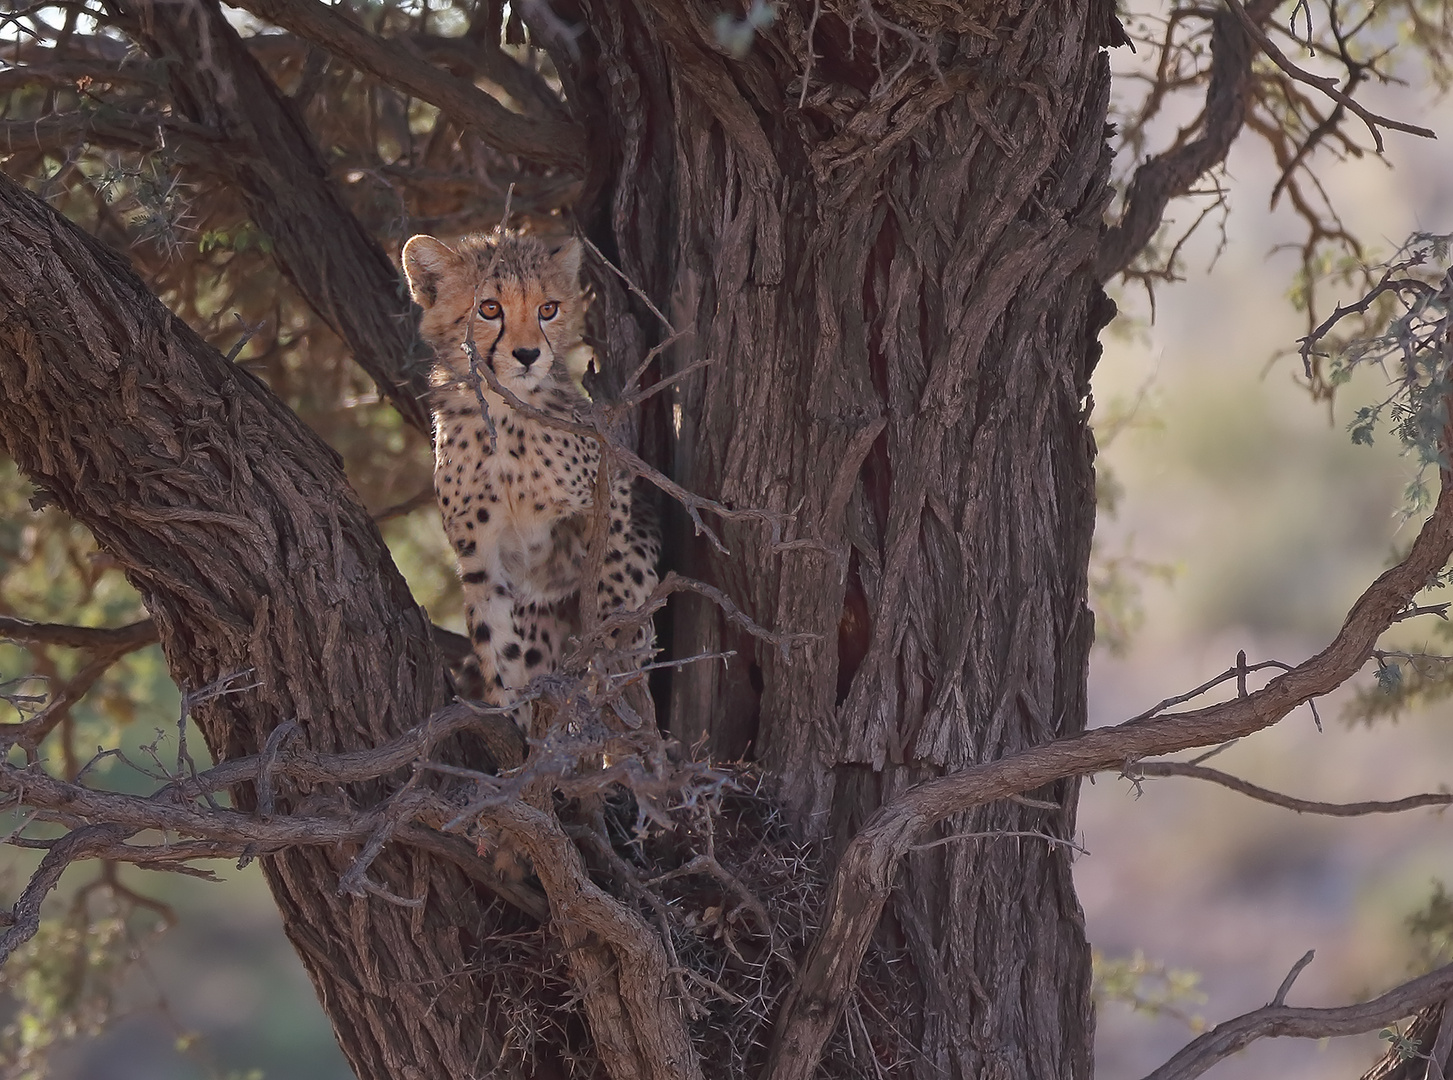 Kalahari Cheetah - Adaptations to an arid region